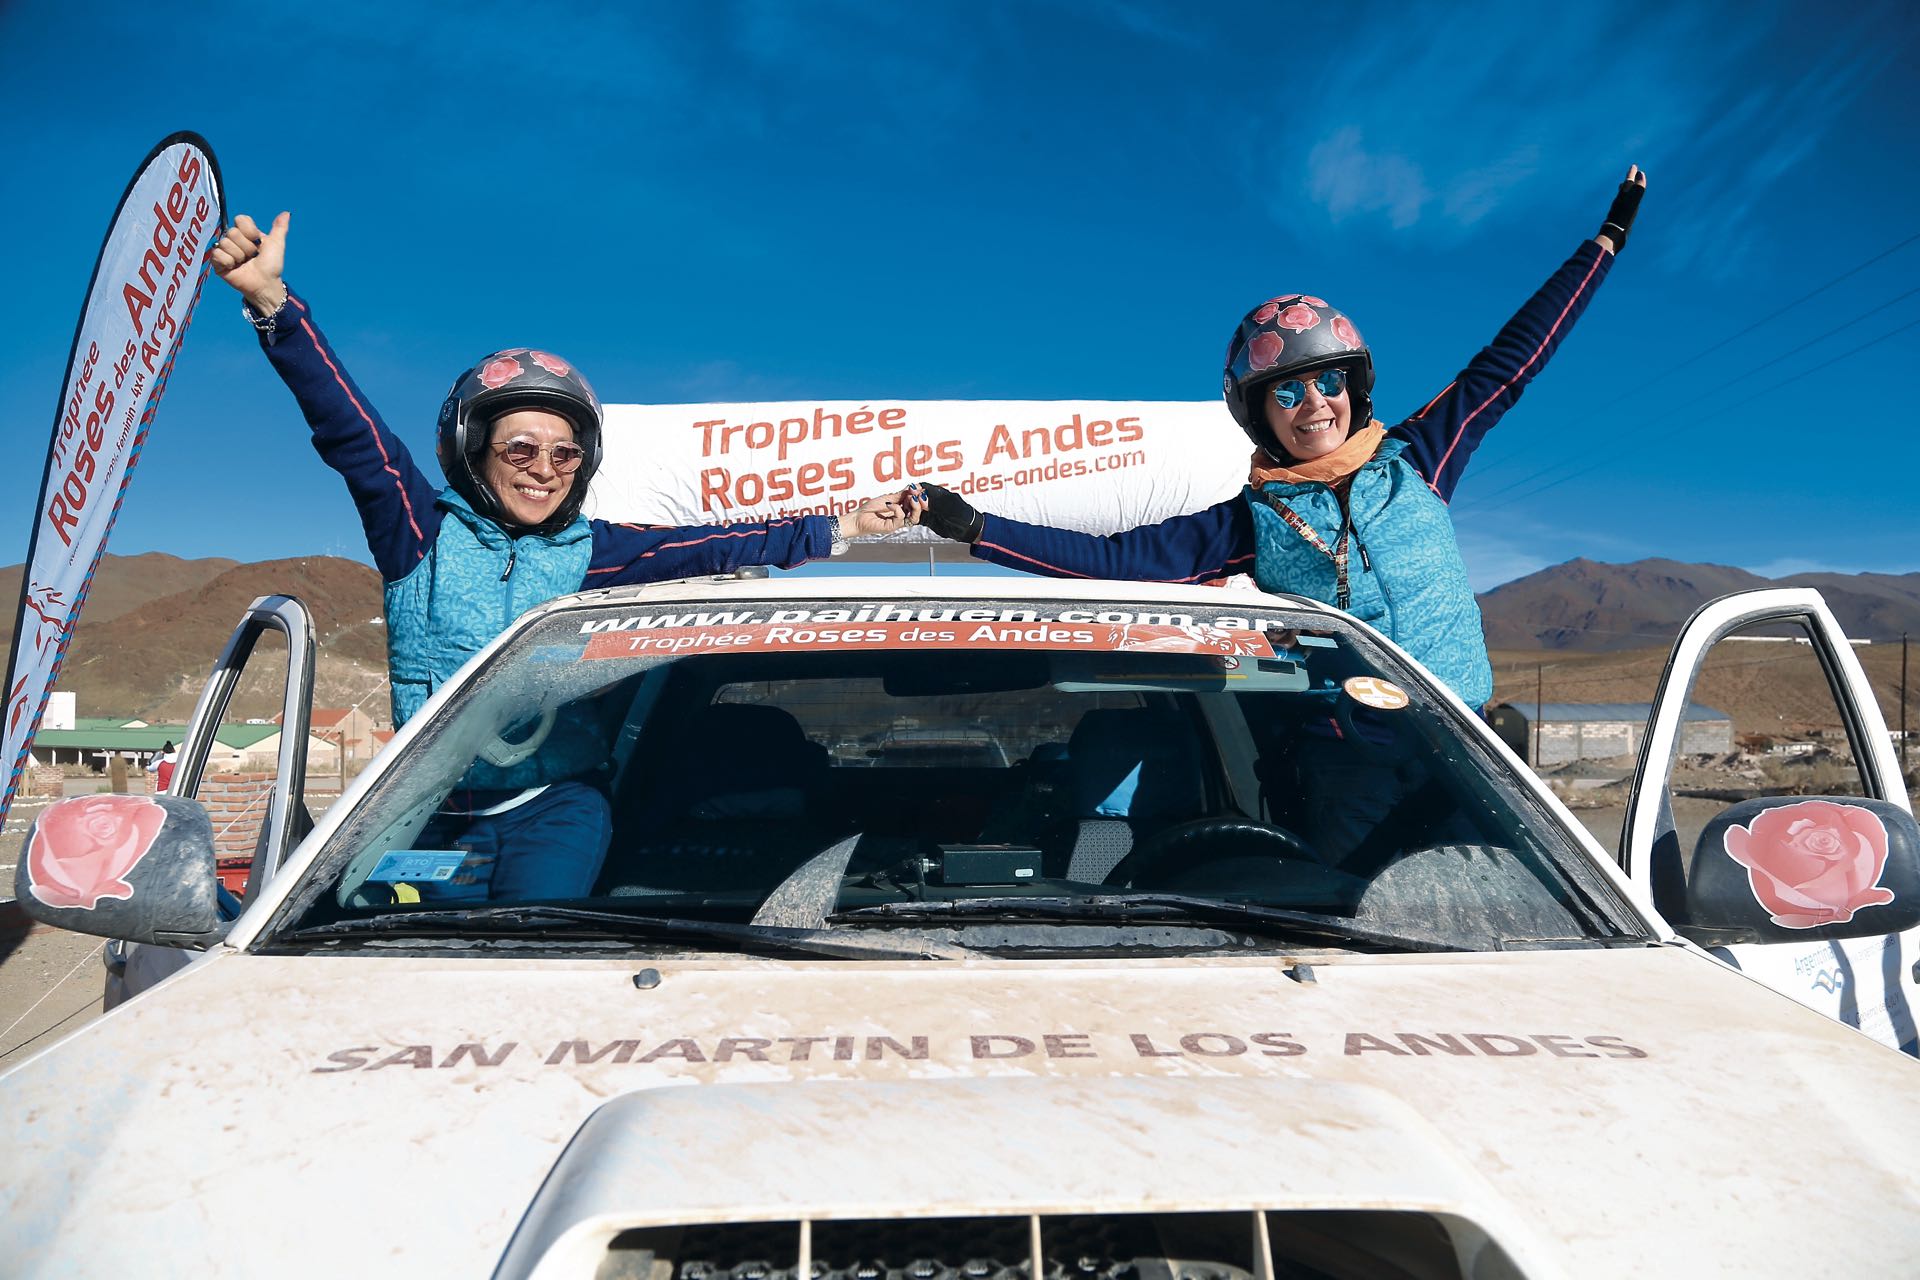 Las médicas Patricia Imamura y Alicia Bagur en la última edición del rally femenino que corrieron juntas en el norte. Fueron las primeras participantes argentinas del Trophée Roses de Andes.